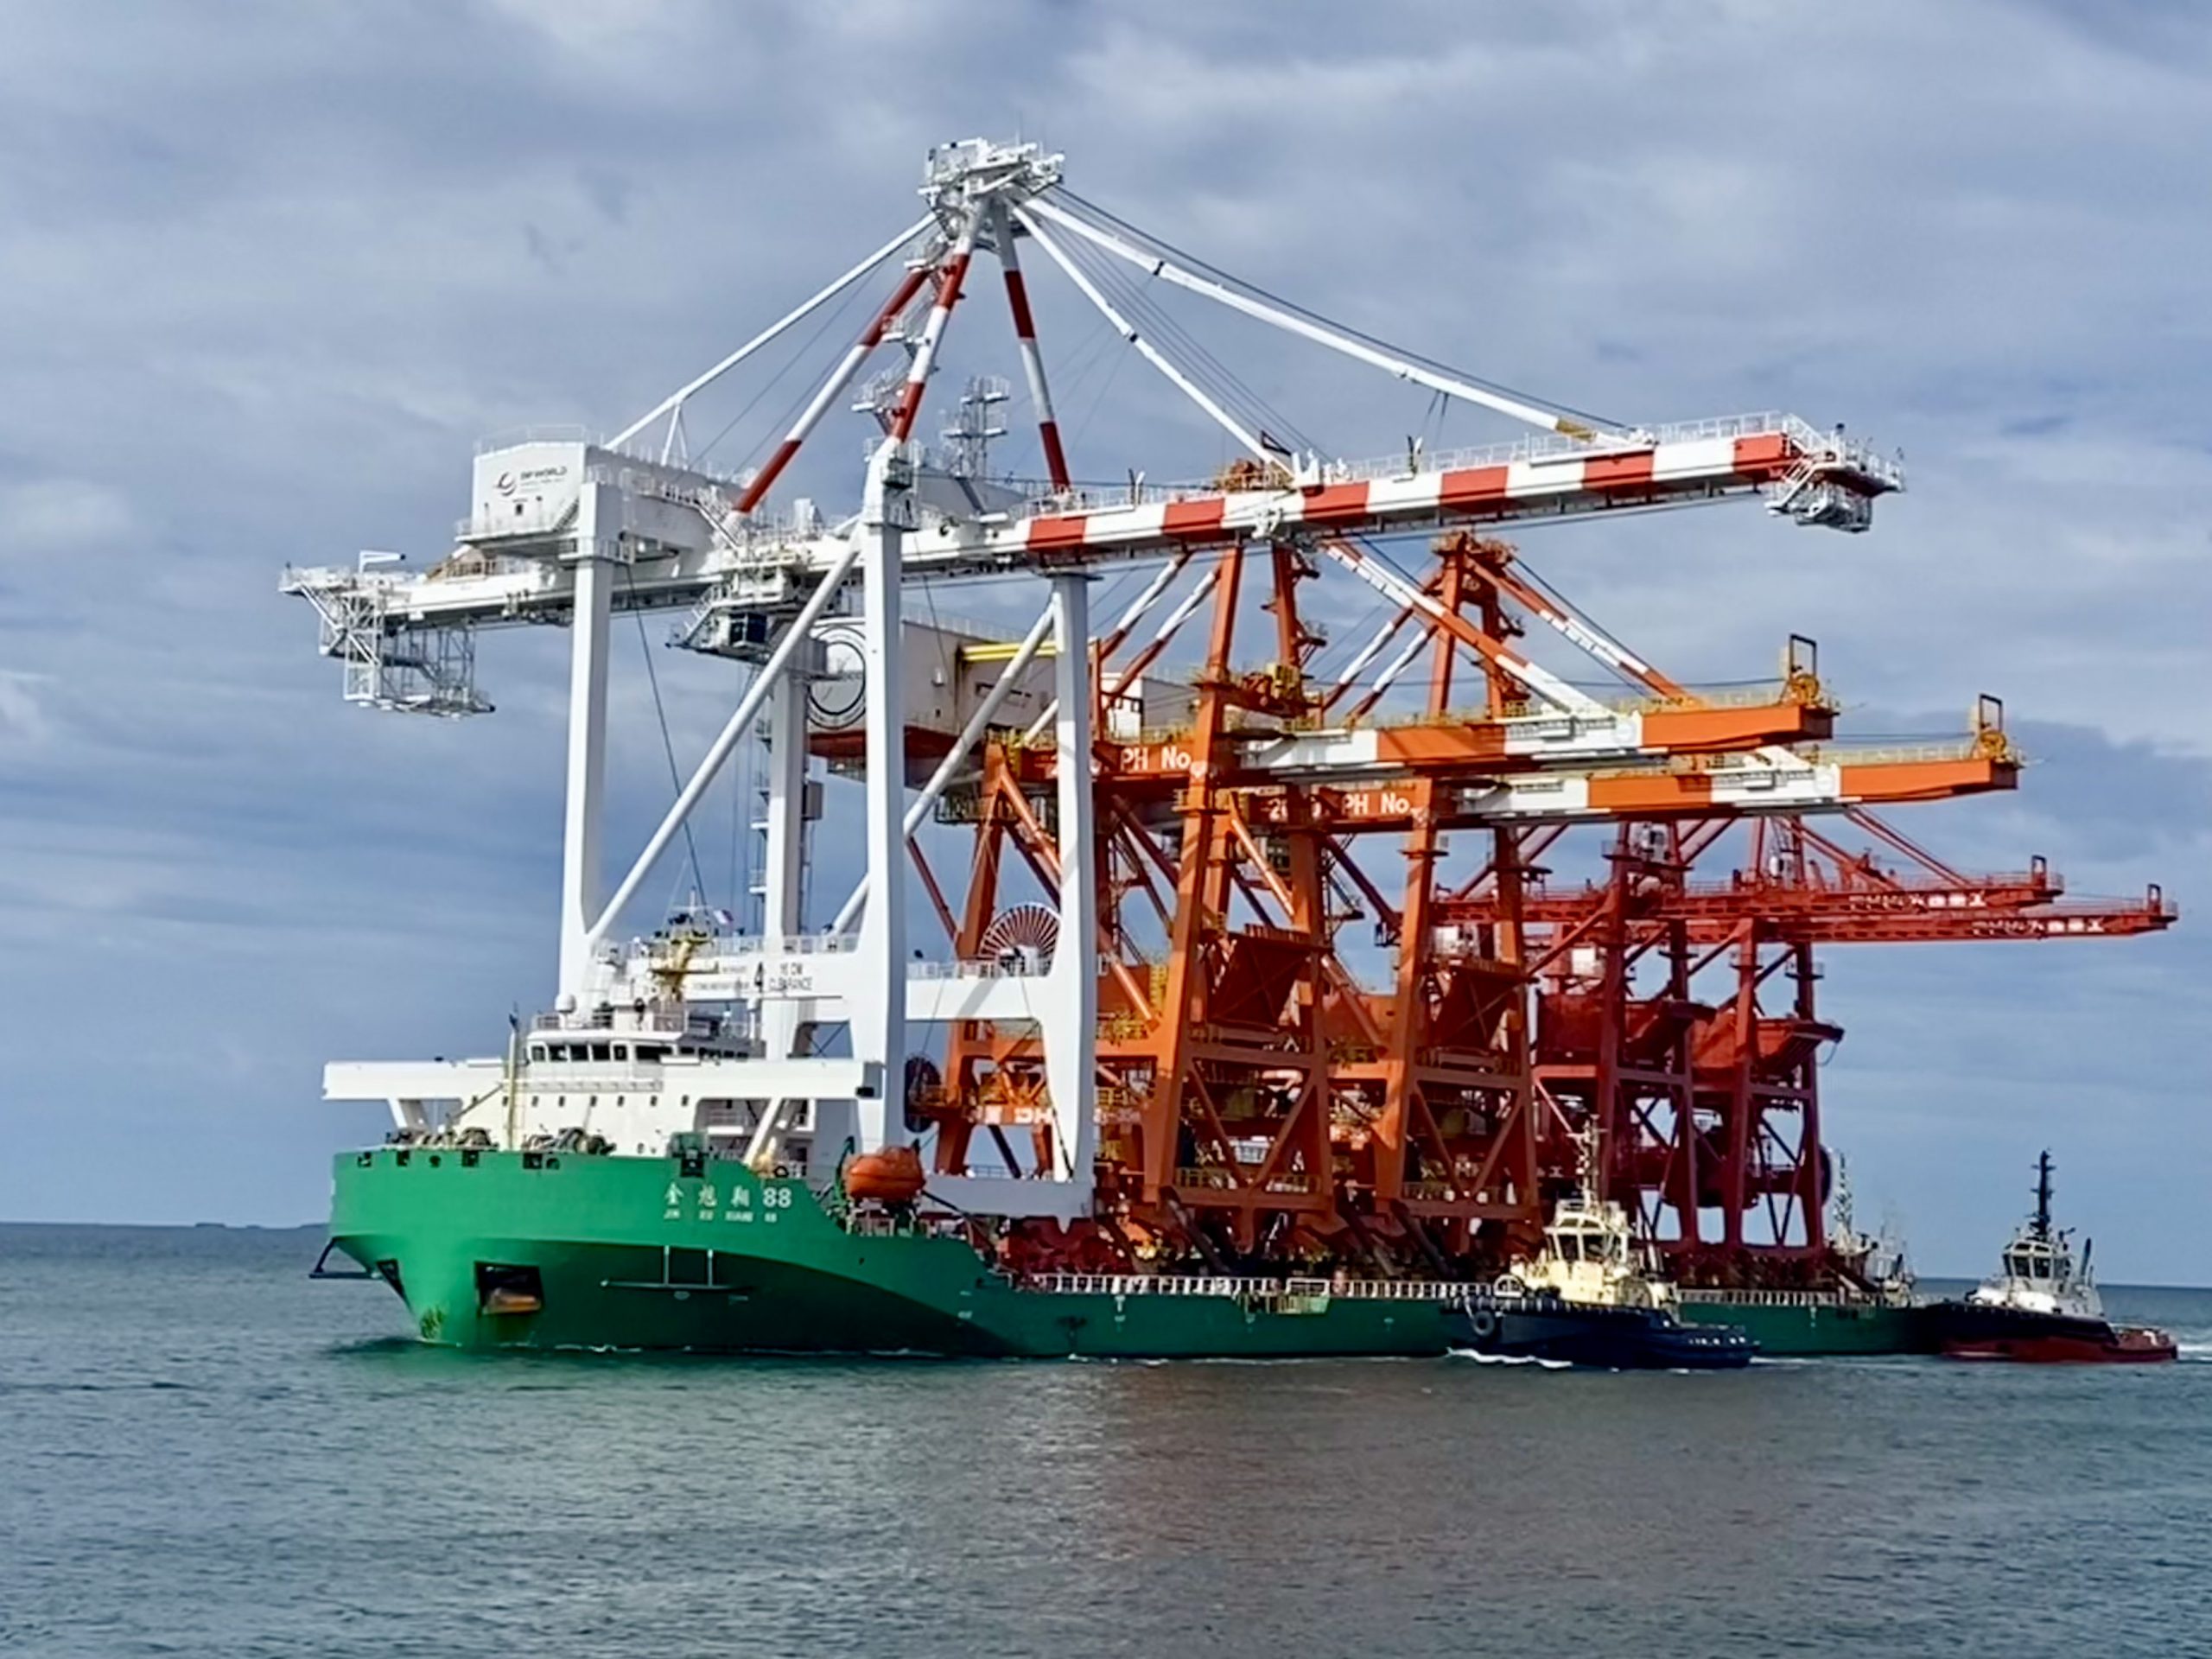 New Crane arrives in Fremantle Port